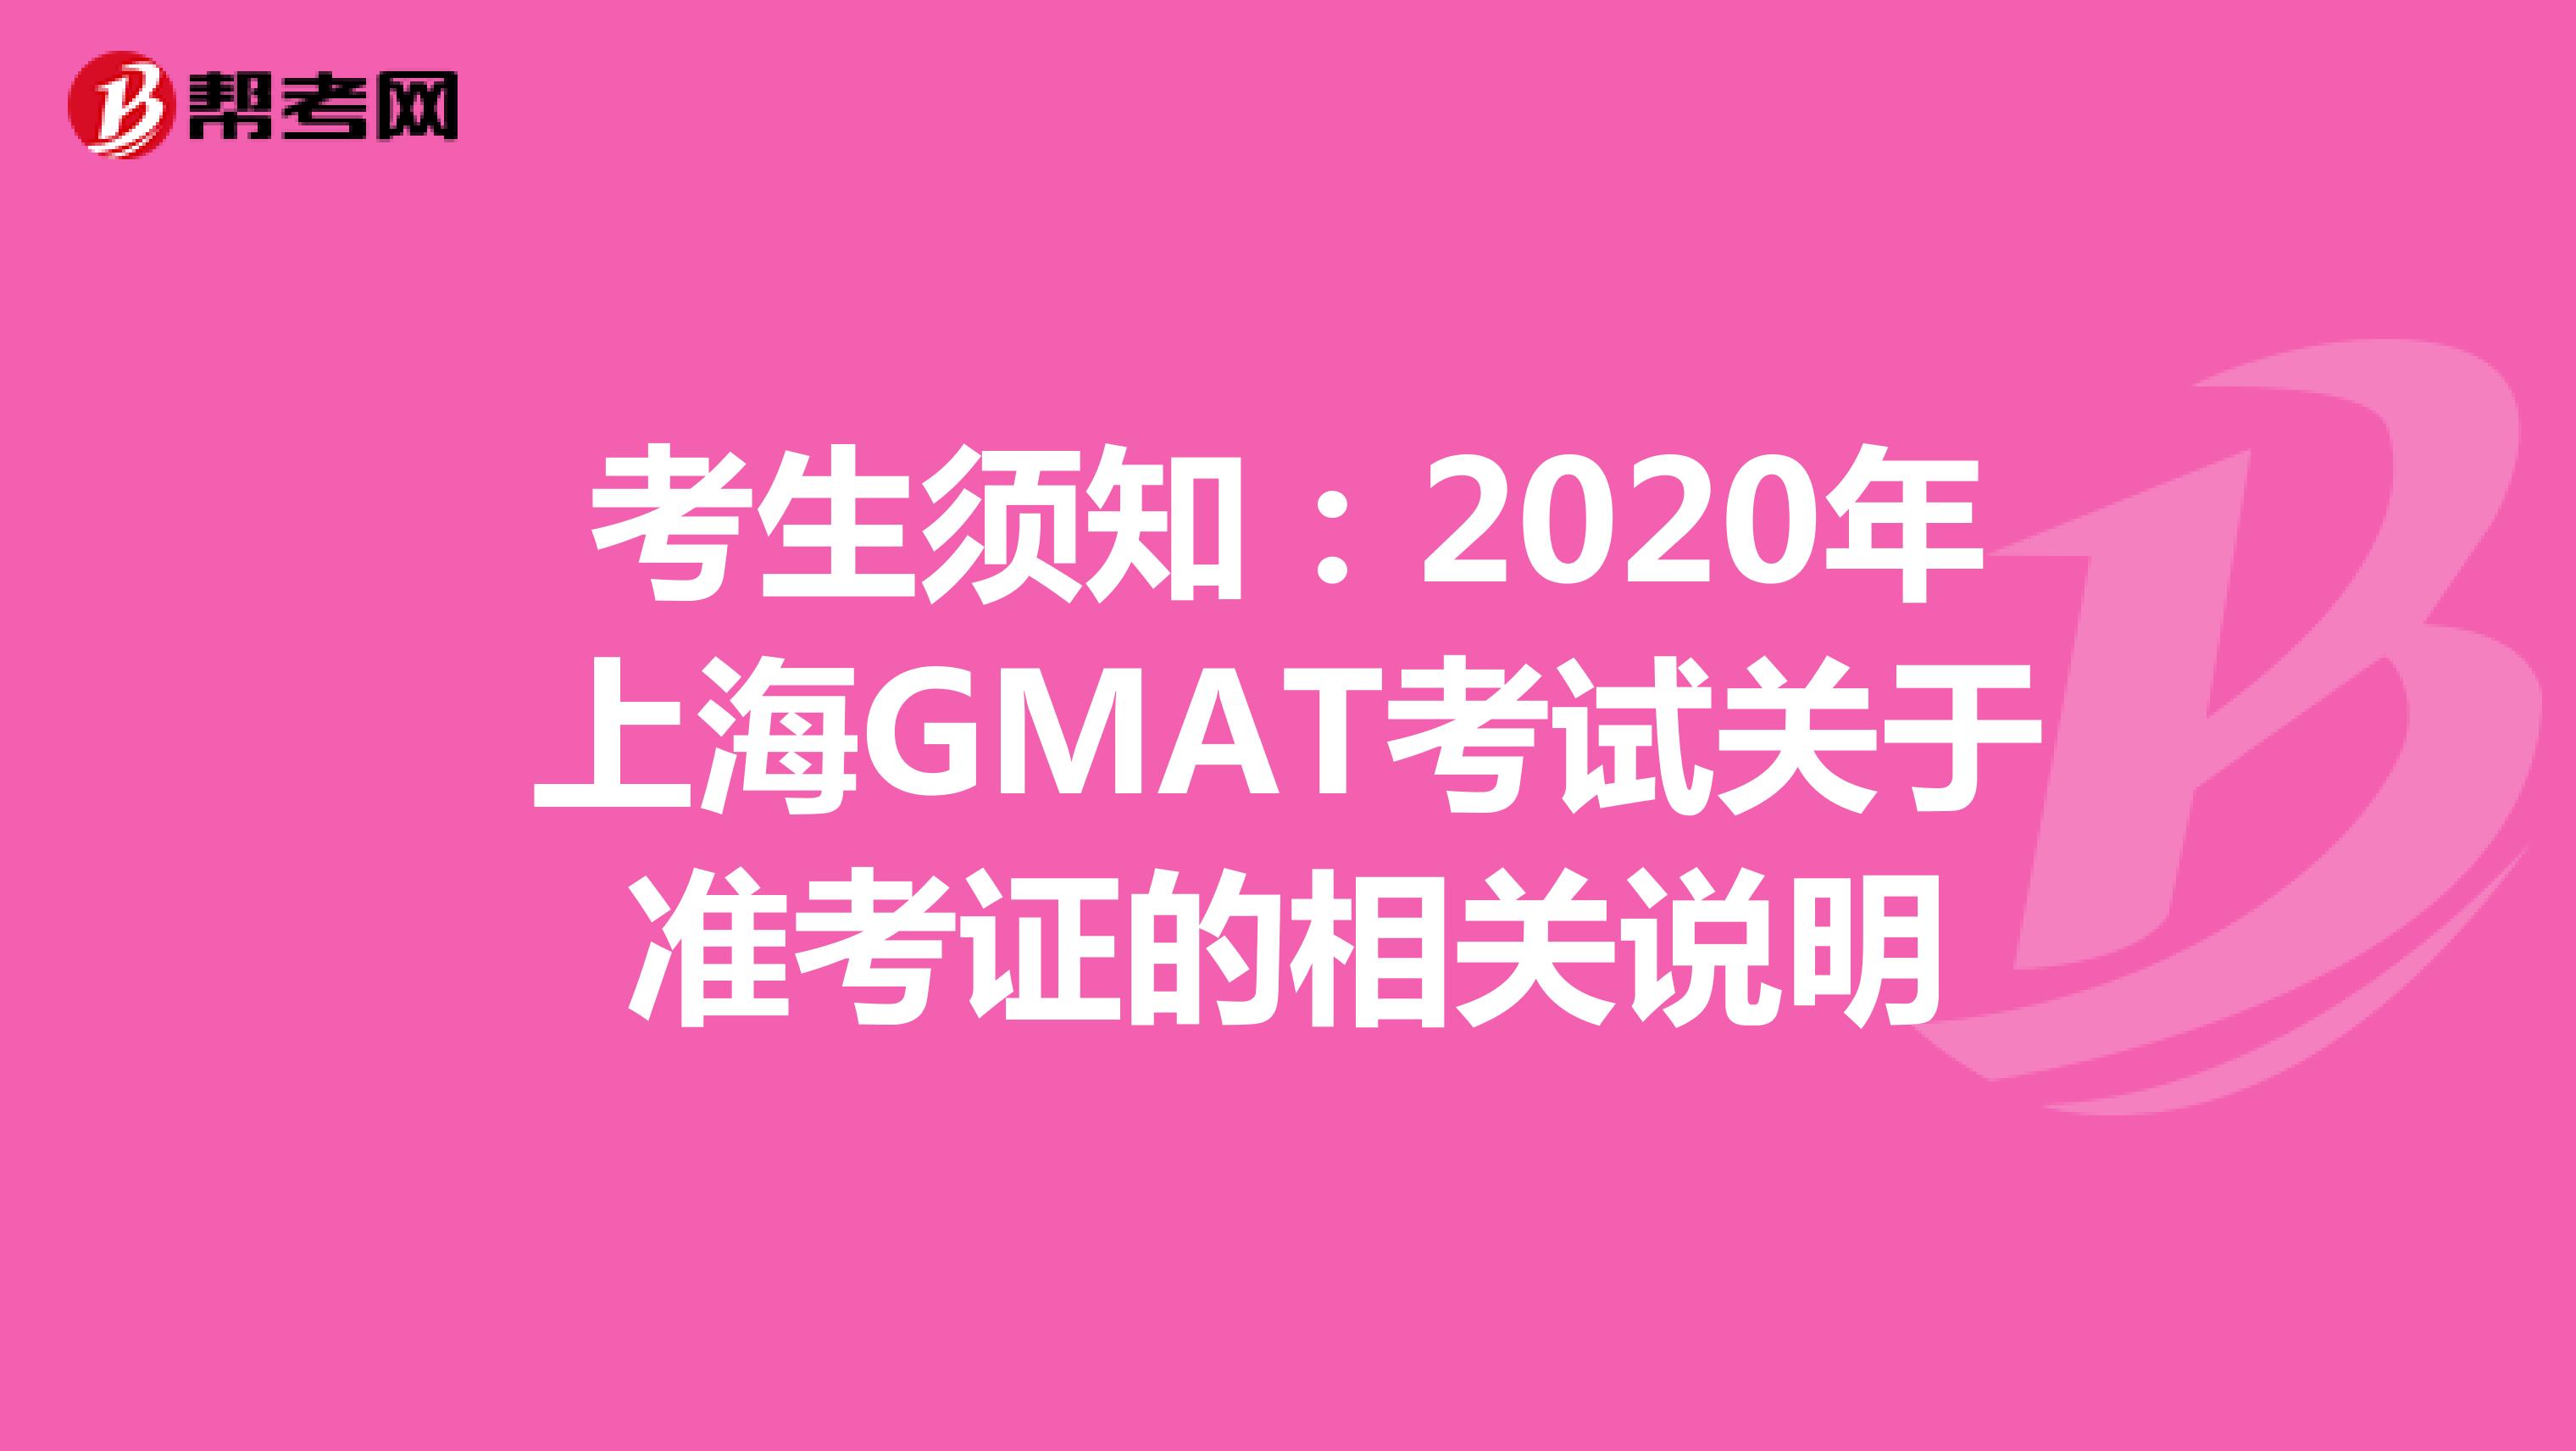 考生须知：2020年上海GMAT考试关于准考证的相关说明